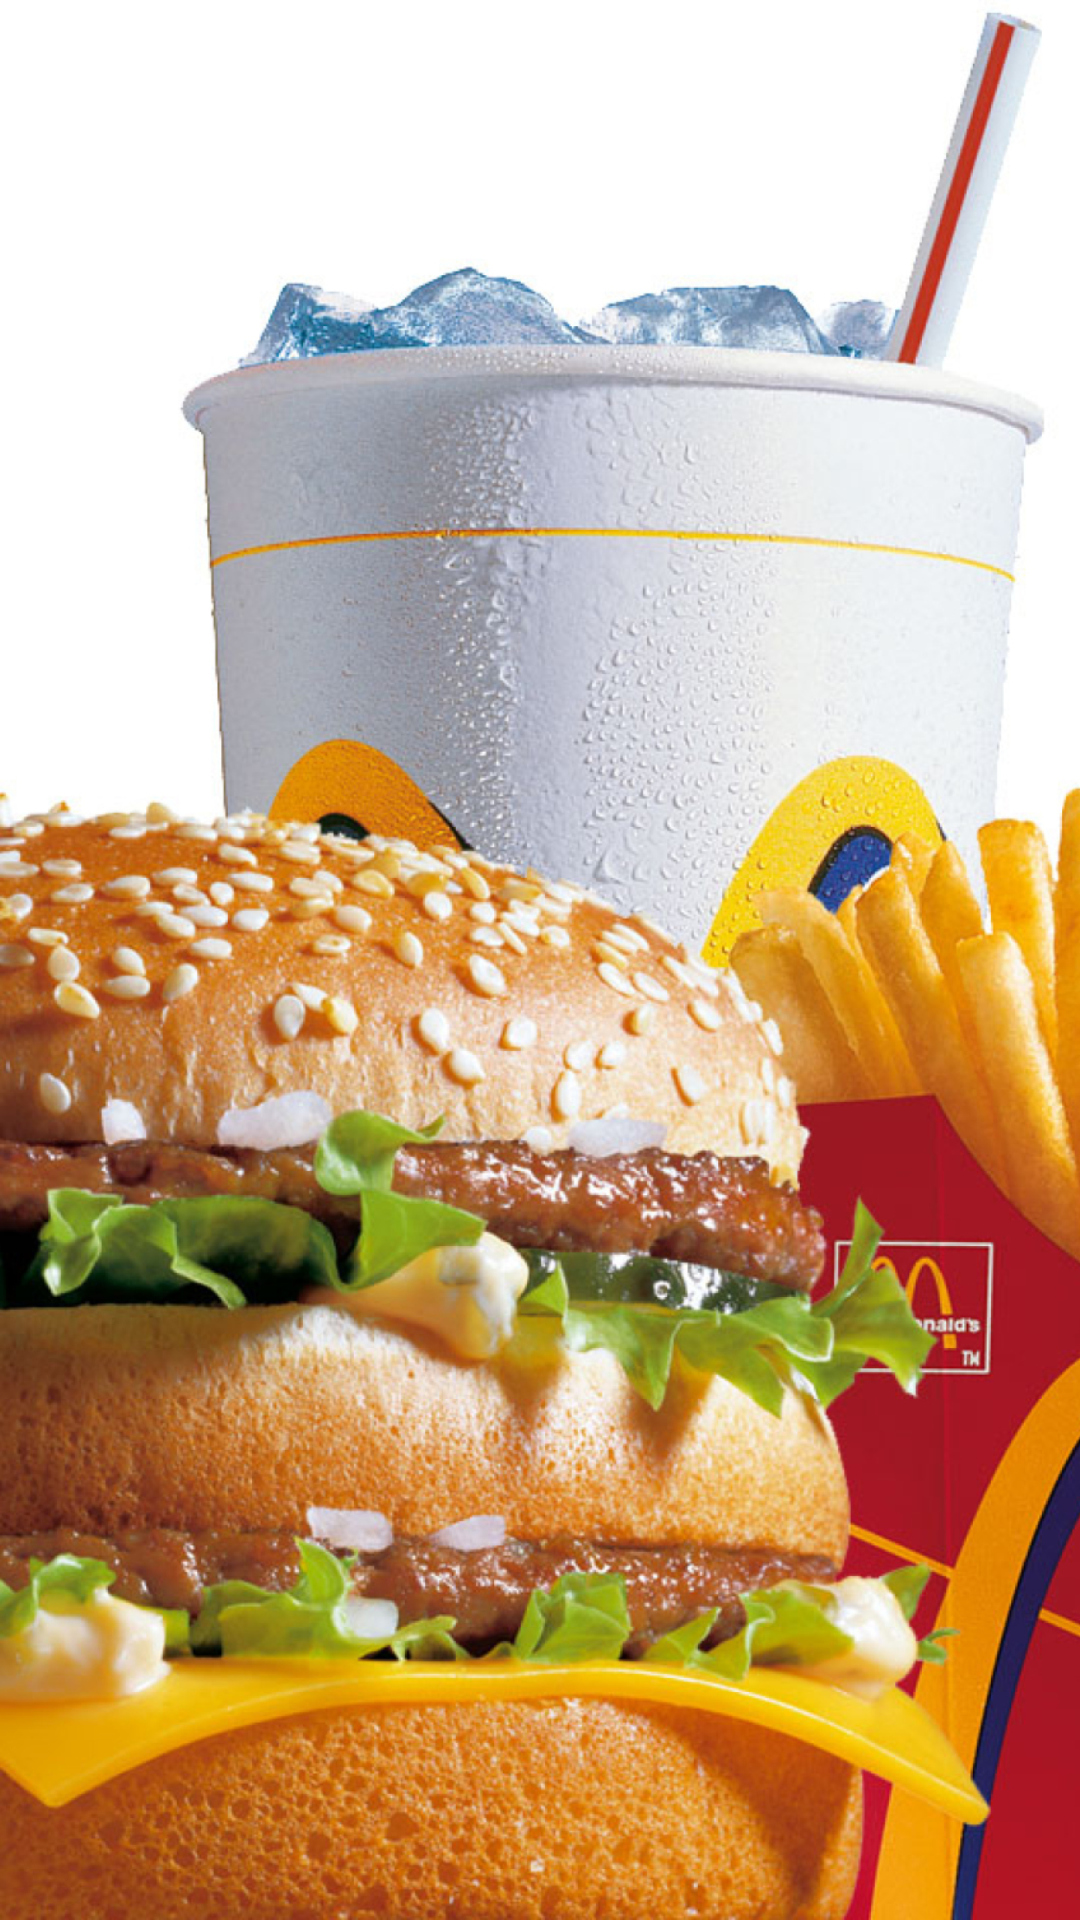 McDonalds: Big Mac wallpaper 1080x1920